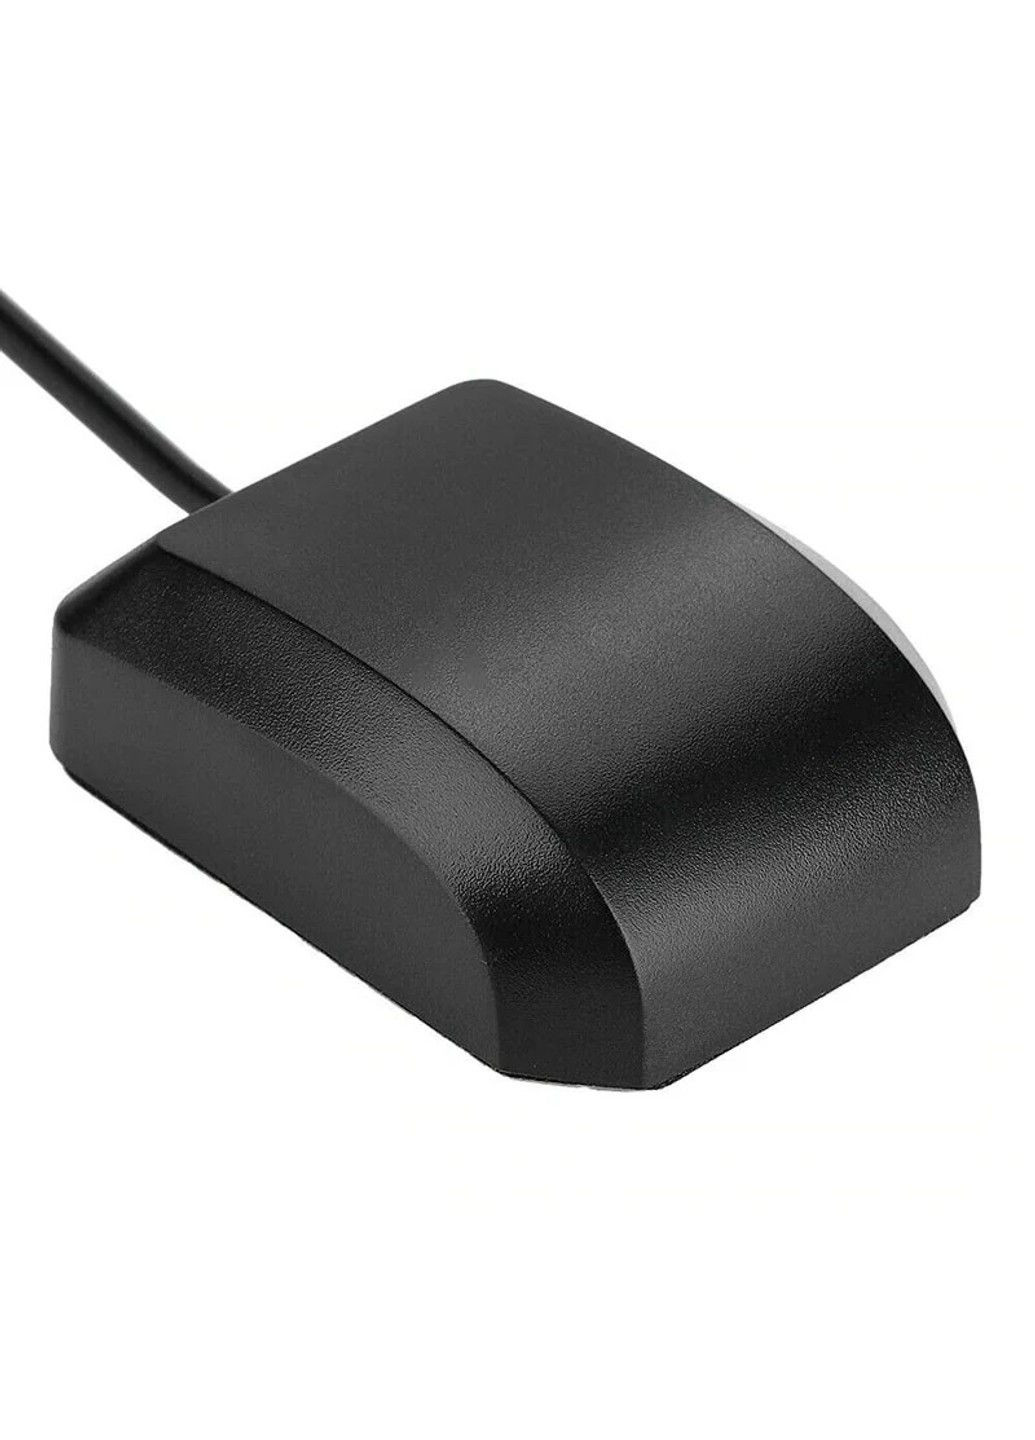 USB GPS приемник для ноутбука, компьютера G-MOUSE чип 8 с выносным кабелем 2м и магнитным креплением U-blox (293061843)